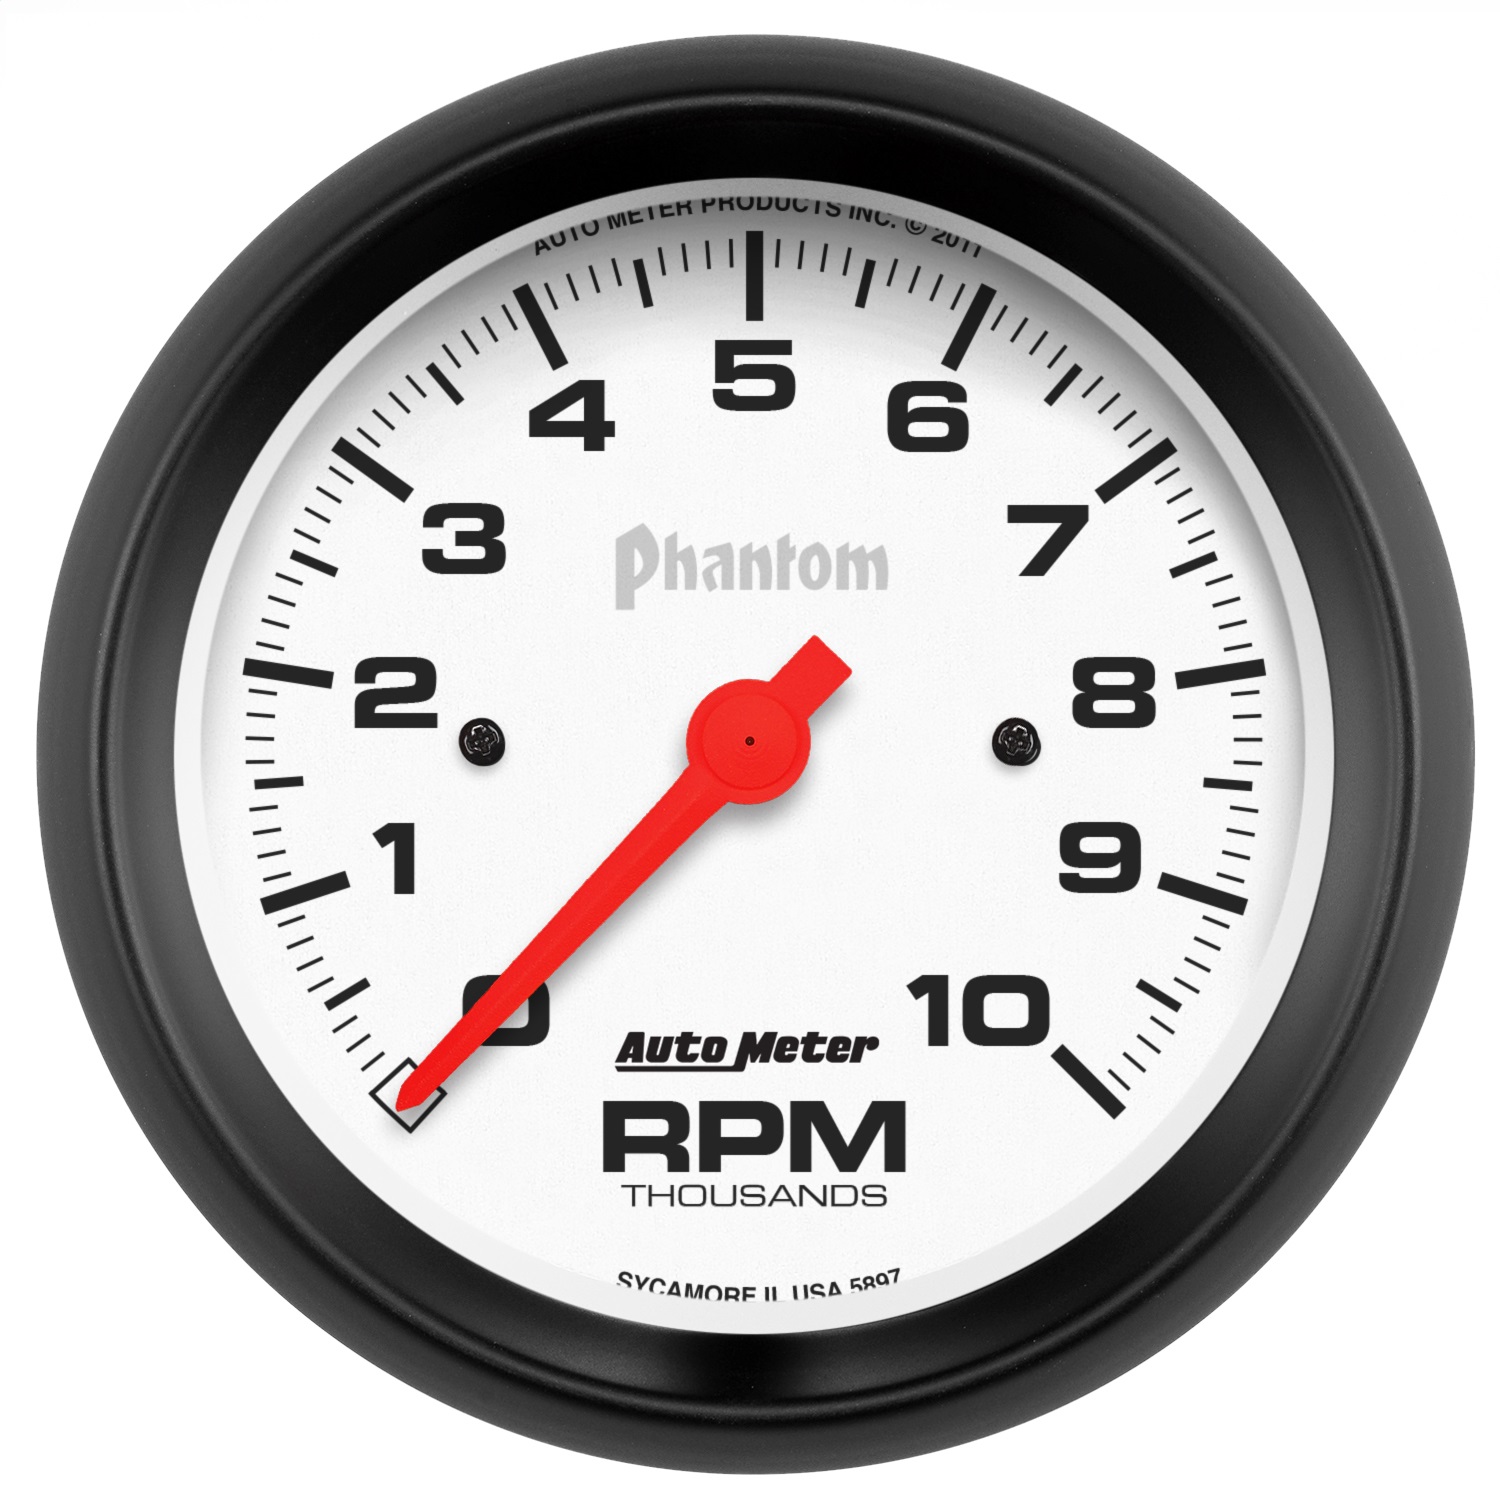 Auto Meter Auto Meter 5897 Phantom; In-Dash Electric Tachometer